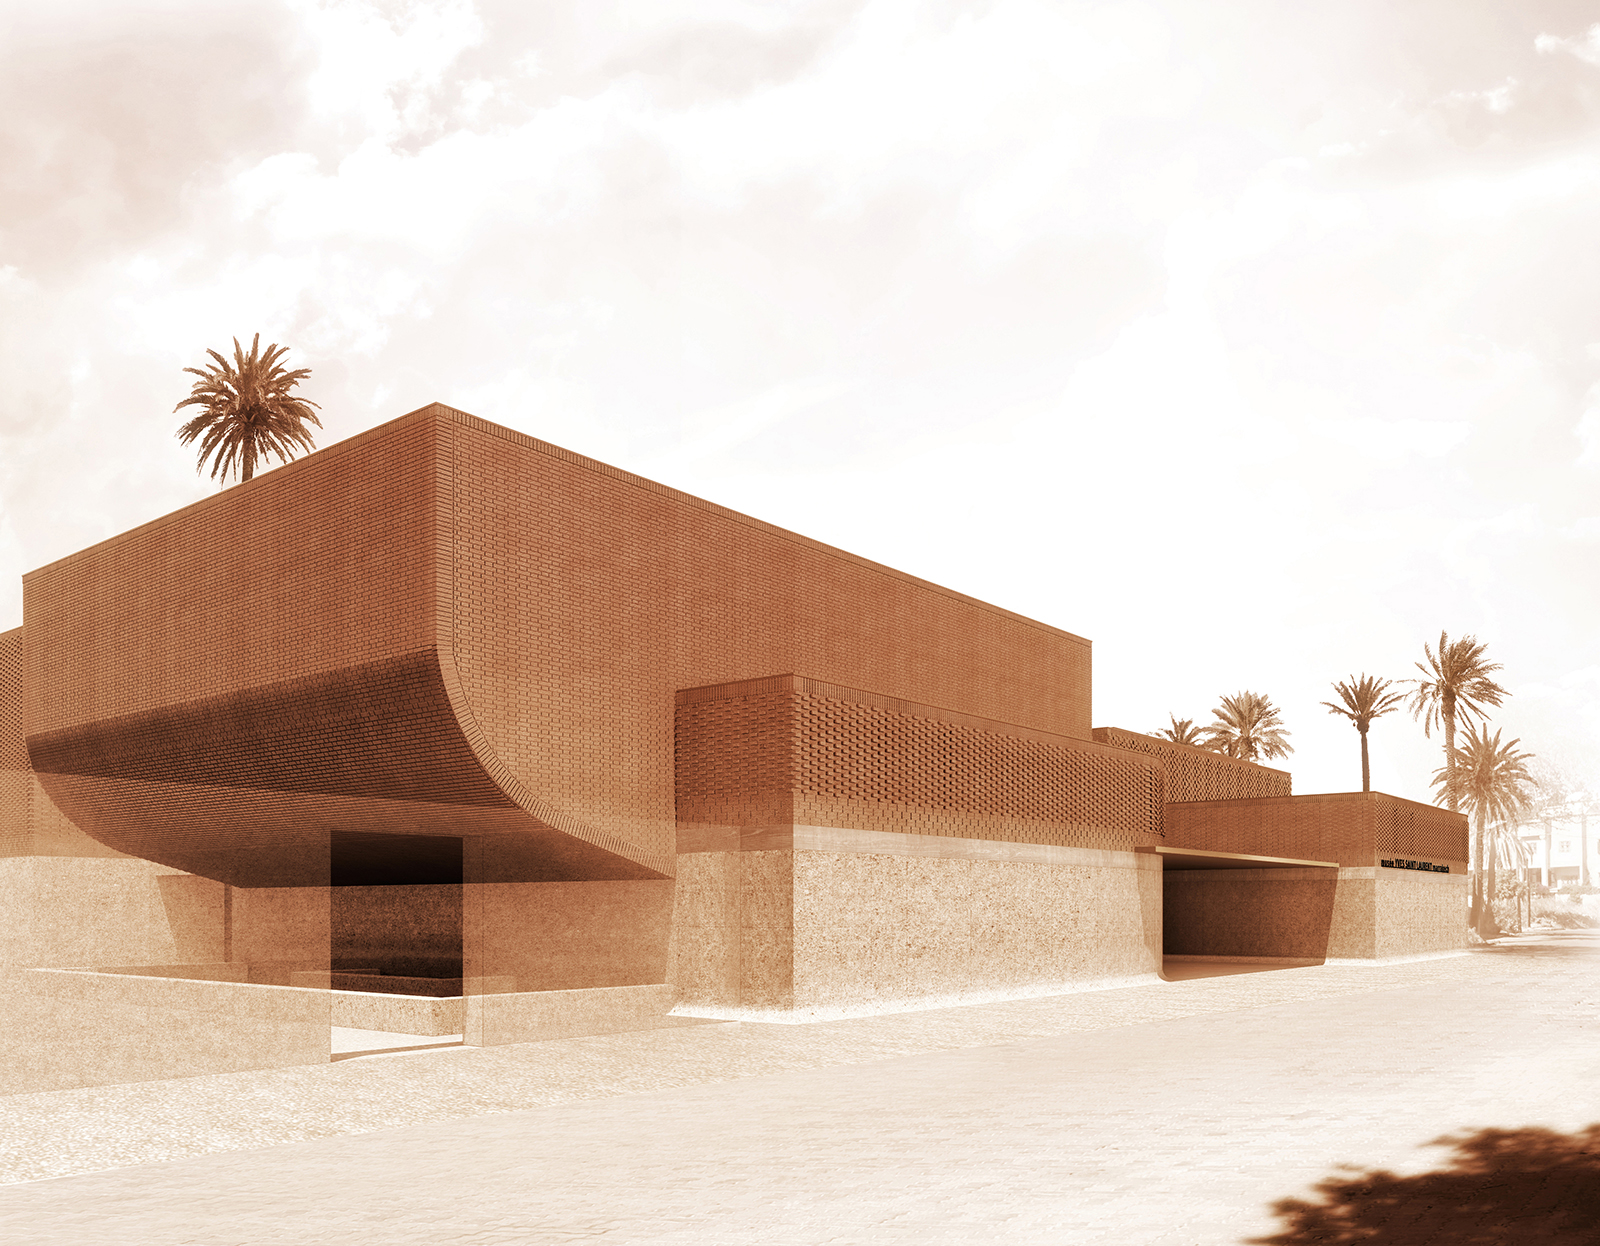 Musée Yves Saint Laurent Marrakech, entrance courtyard (c) 2016 Studio KO Fondation Pierre Bergé Yves Saint Laurent